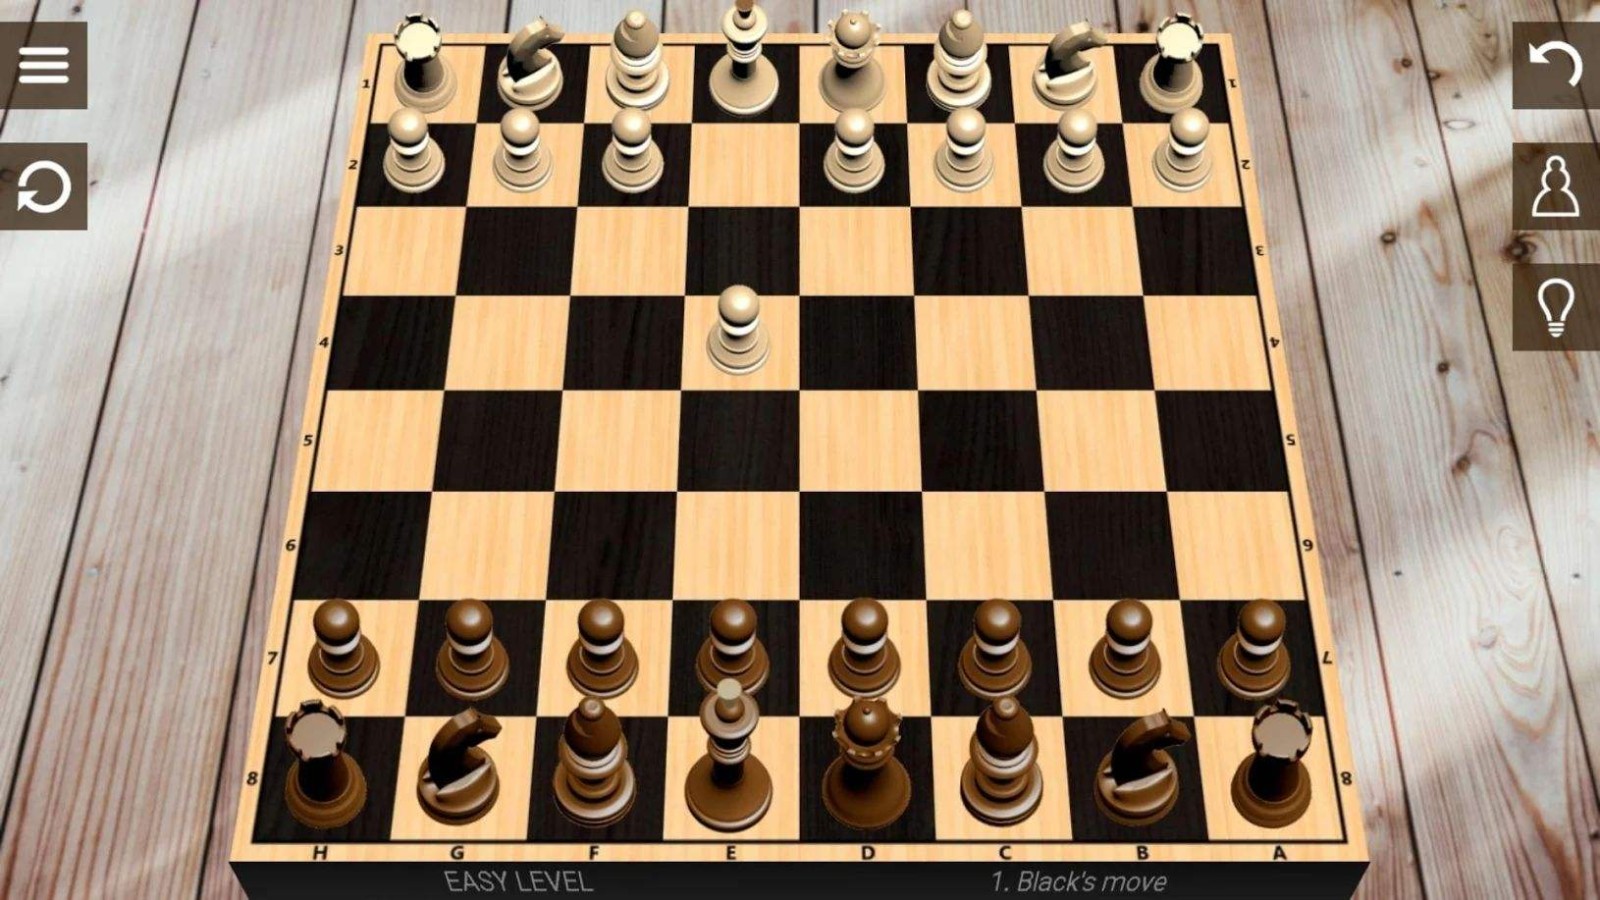 同屏双人象棋游戏